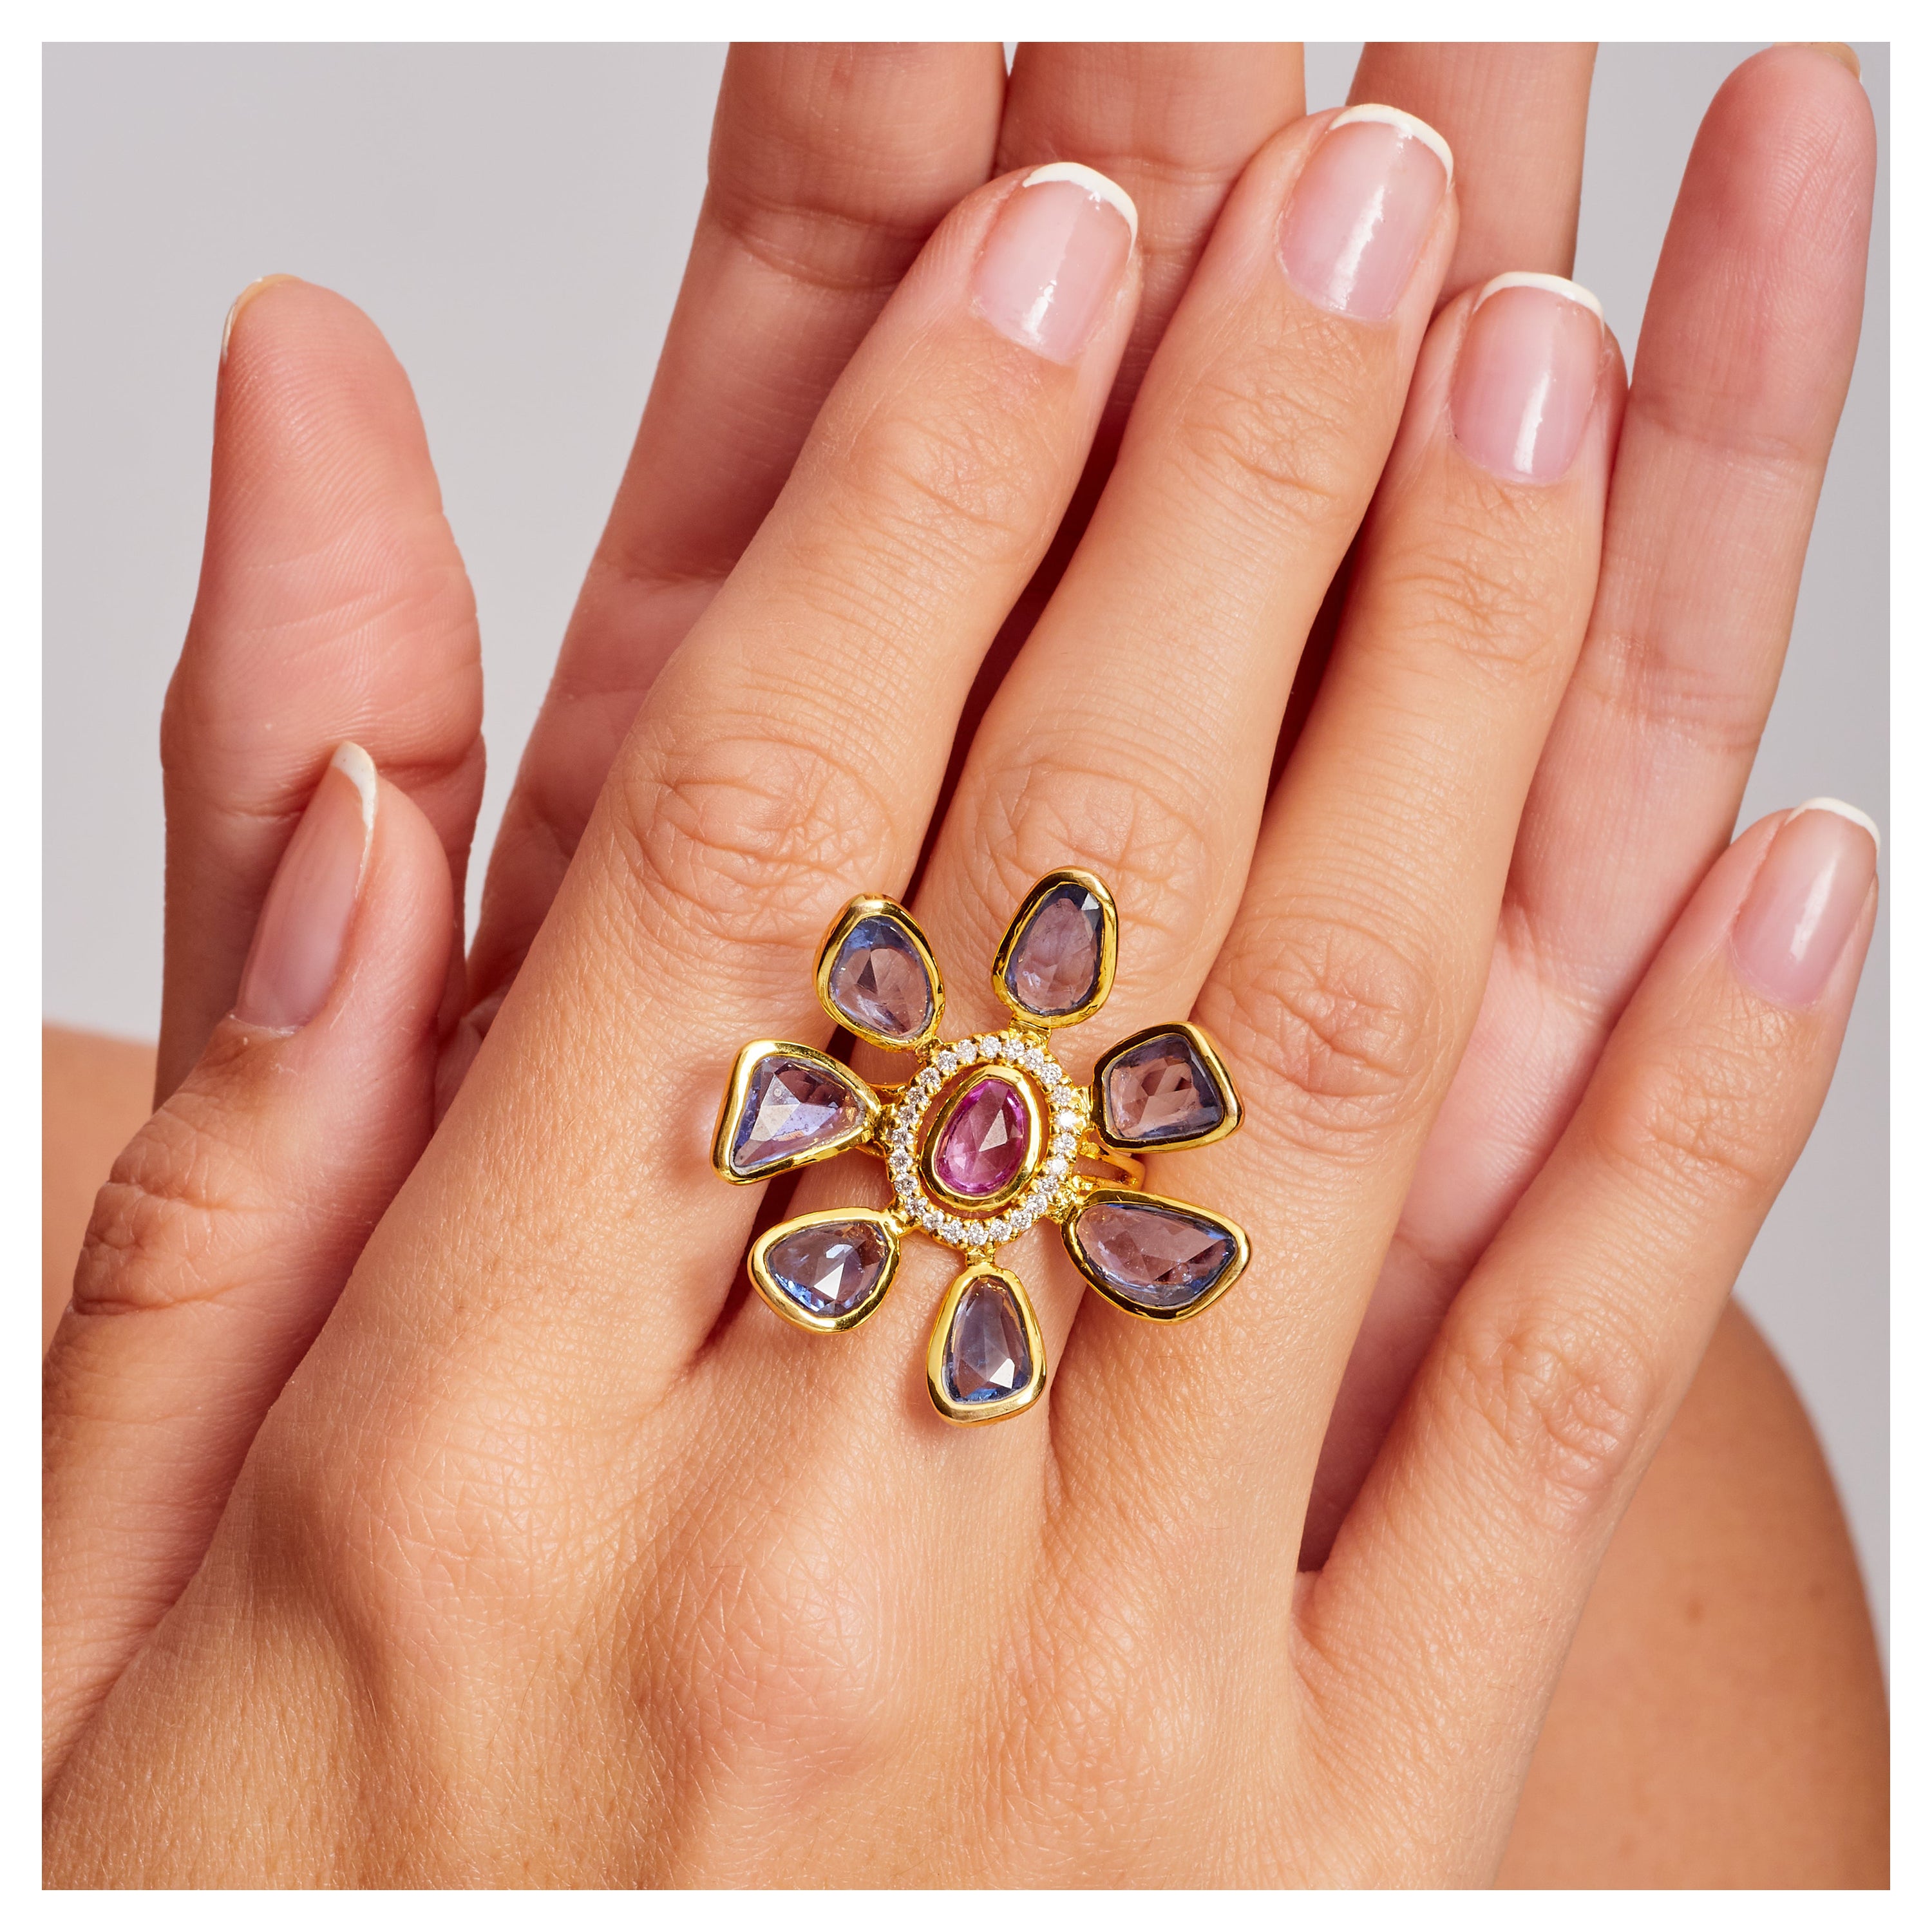 8,54 Karat Gesamtgewicht Saphir Diamant 18k Gelbgold Fashion Ring, Auf Lager.

Dieser Blumenring besteht aus 8,54 Karat blauen und rosafarbenen Saphiren im Rosenschliff und 0,32 Karat Diamanten im Nahbereich, SI1-G. Diese Saphire bilden zusammen die